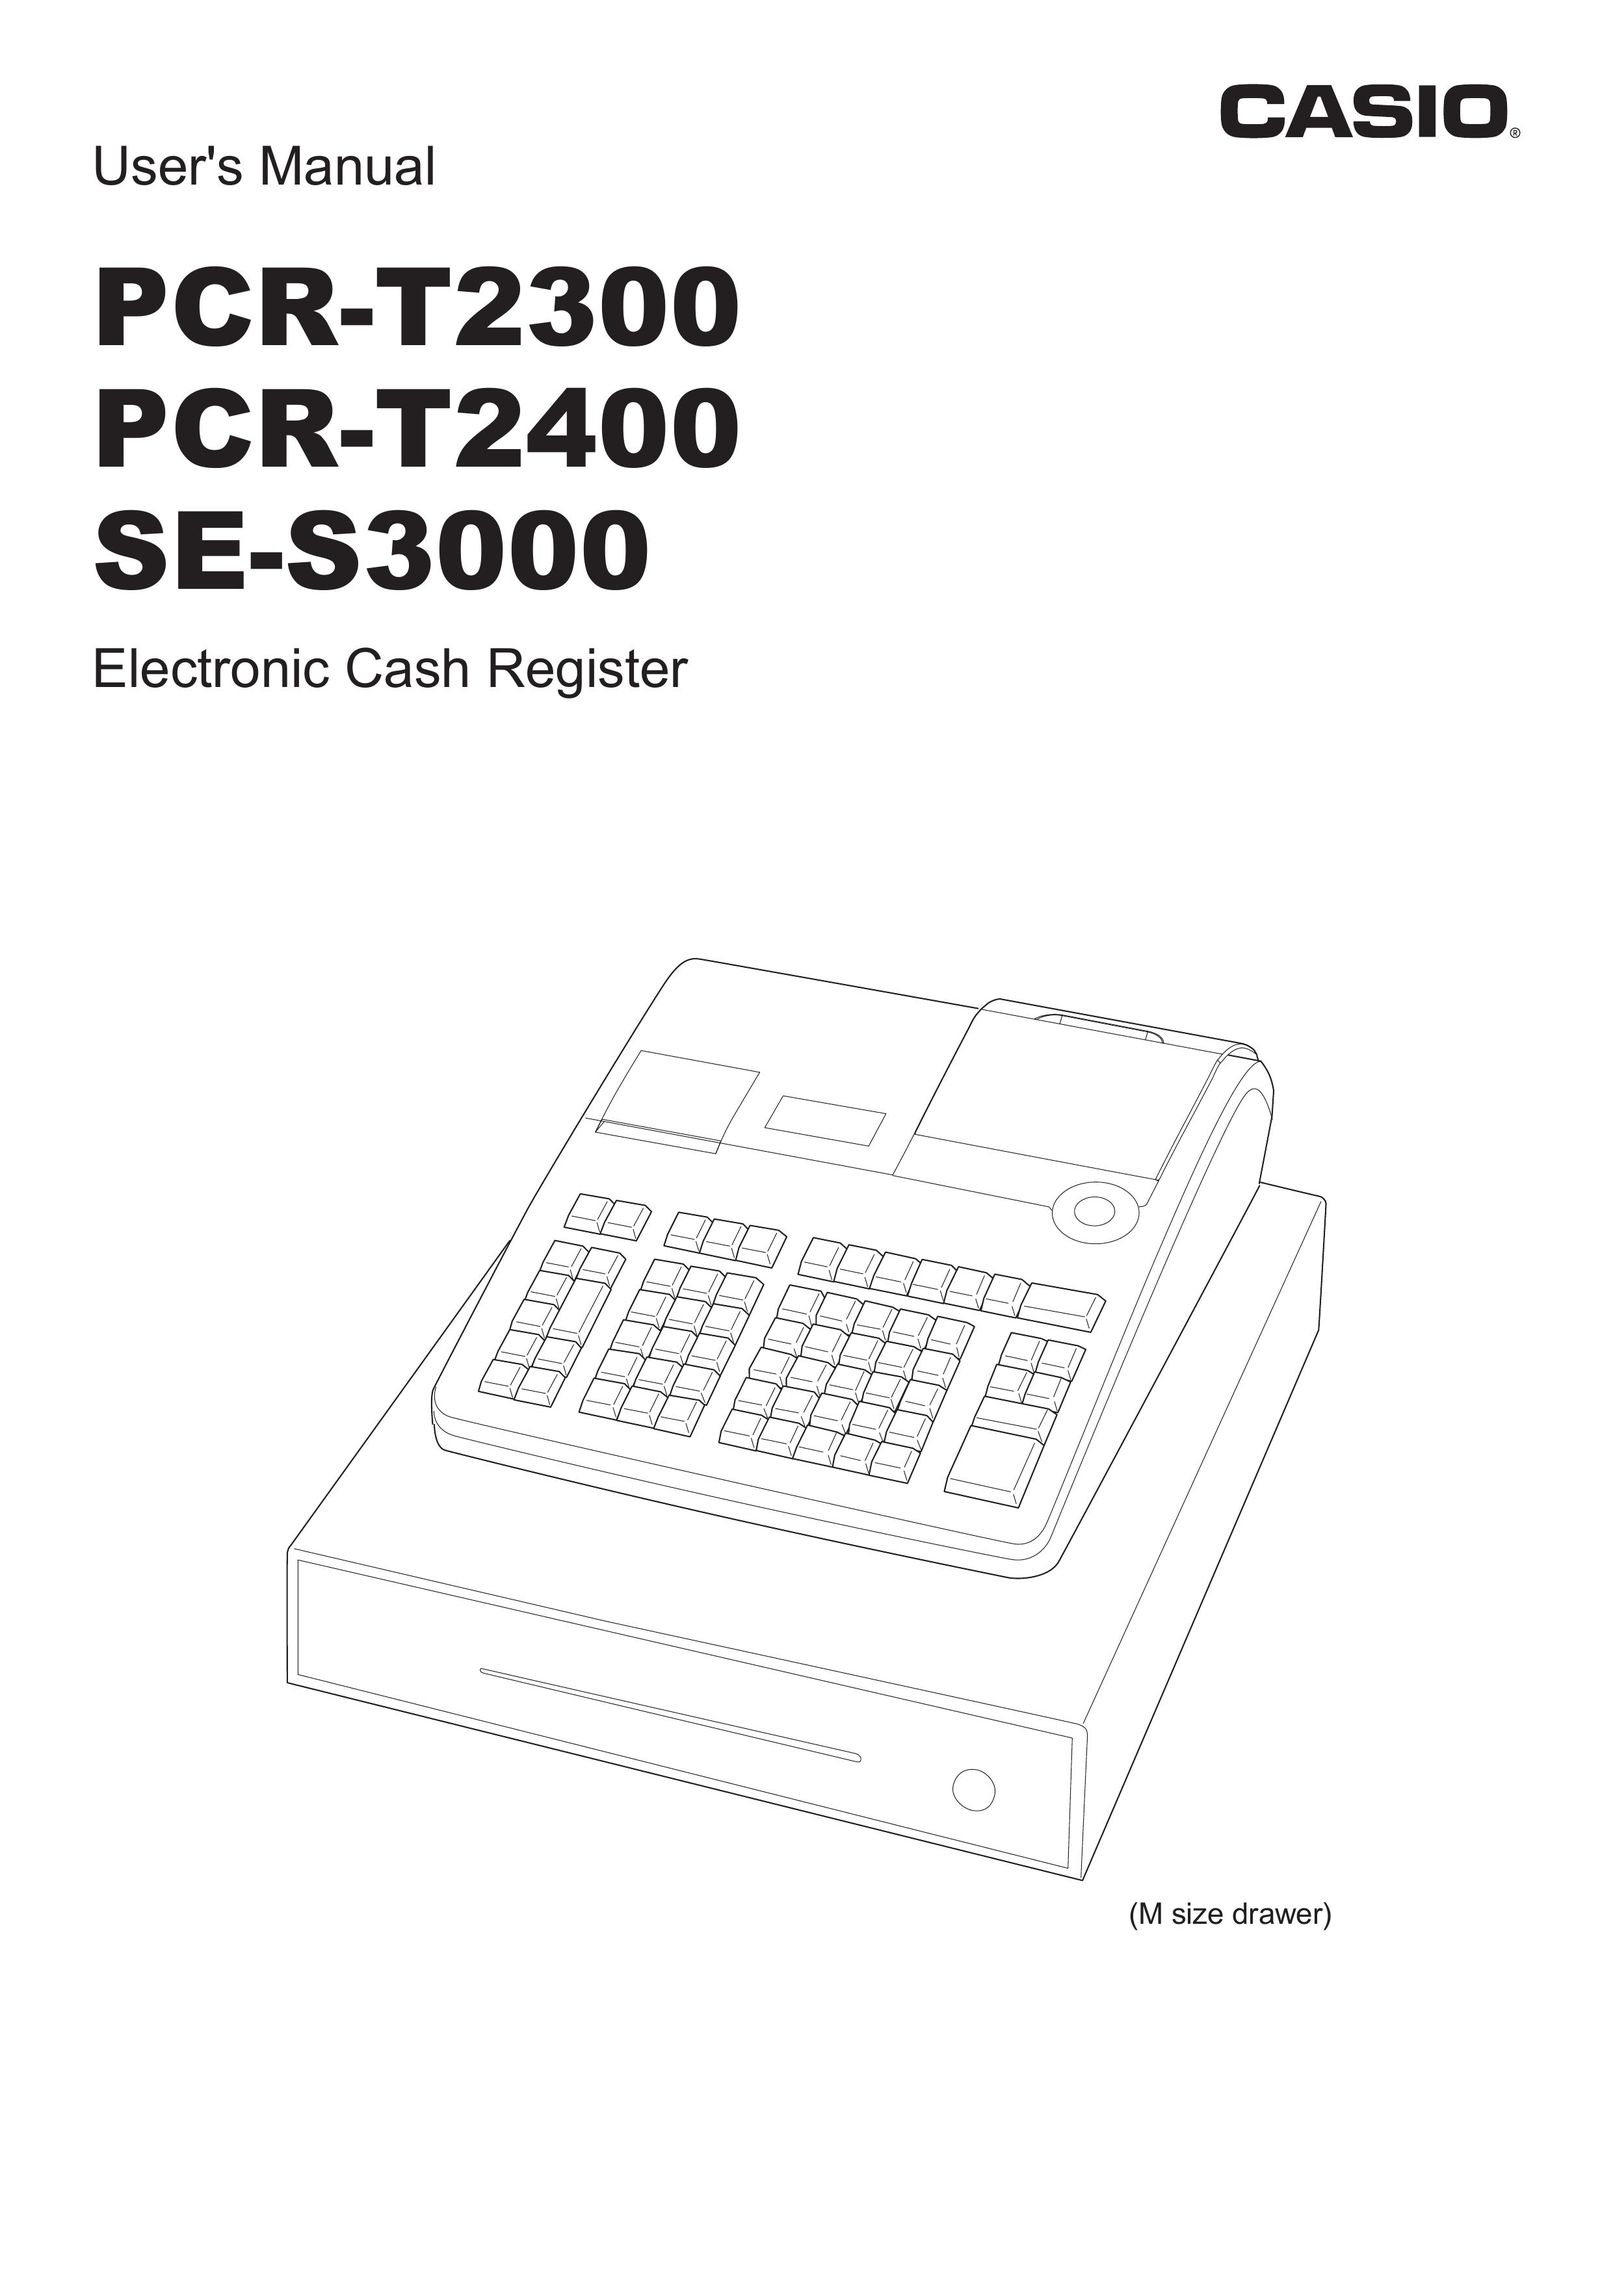 Casio PCR-T2400 Cash Register User Manual